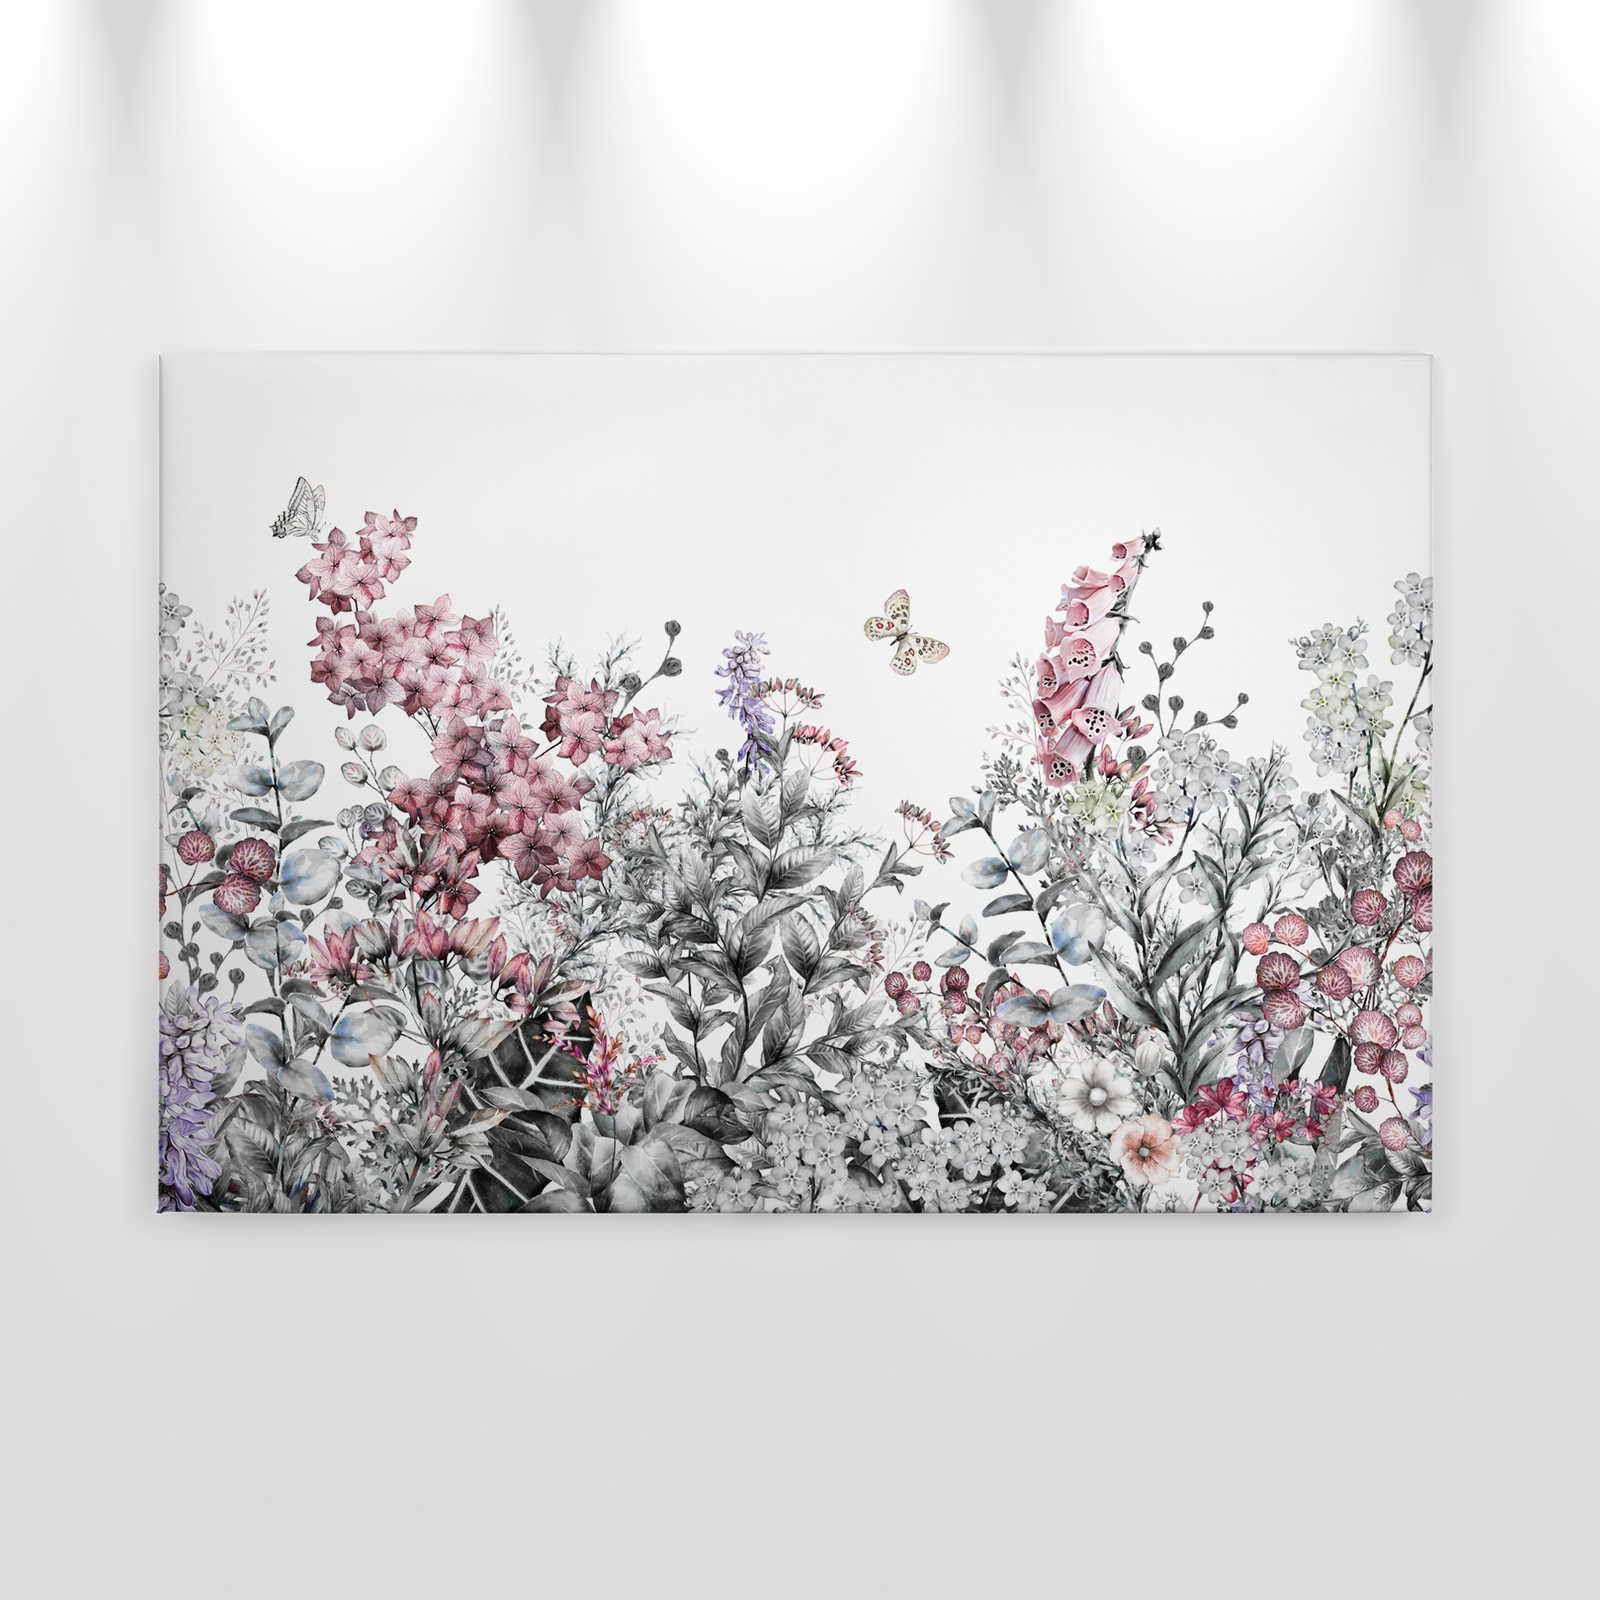             Lienzo con flores pintadas lisas - 0,90 m x 0,60 m
        